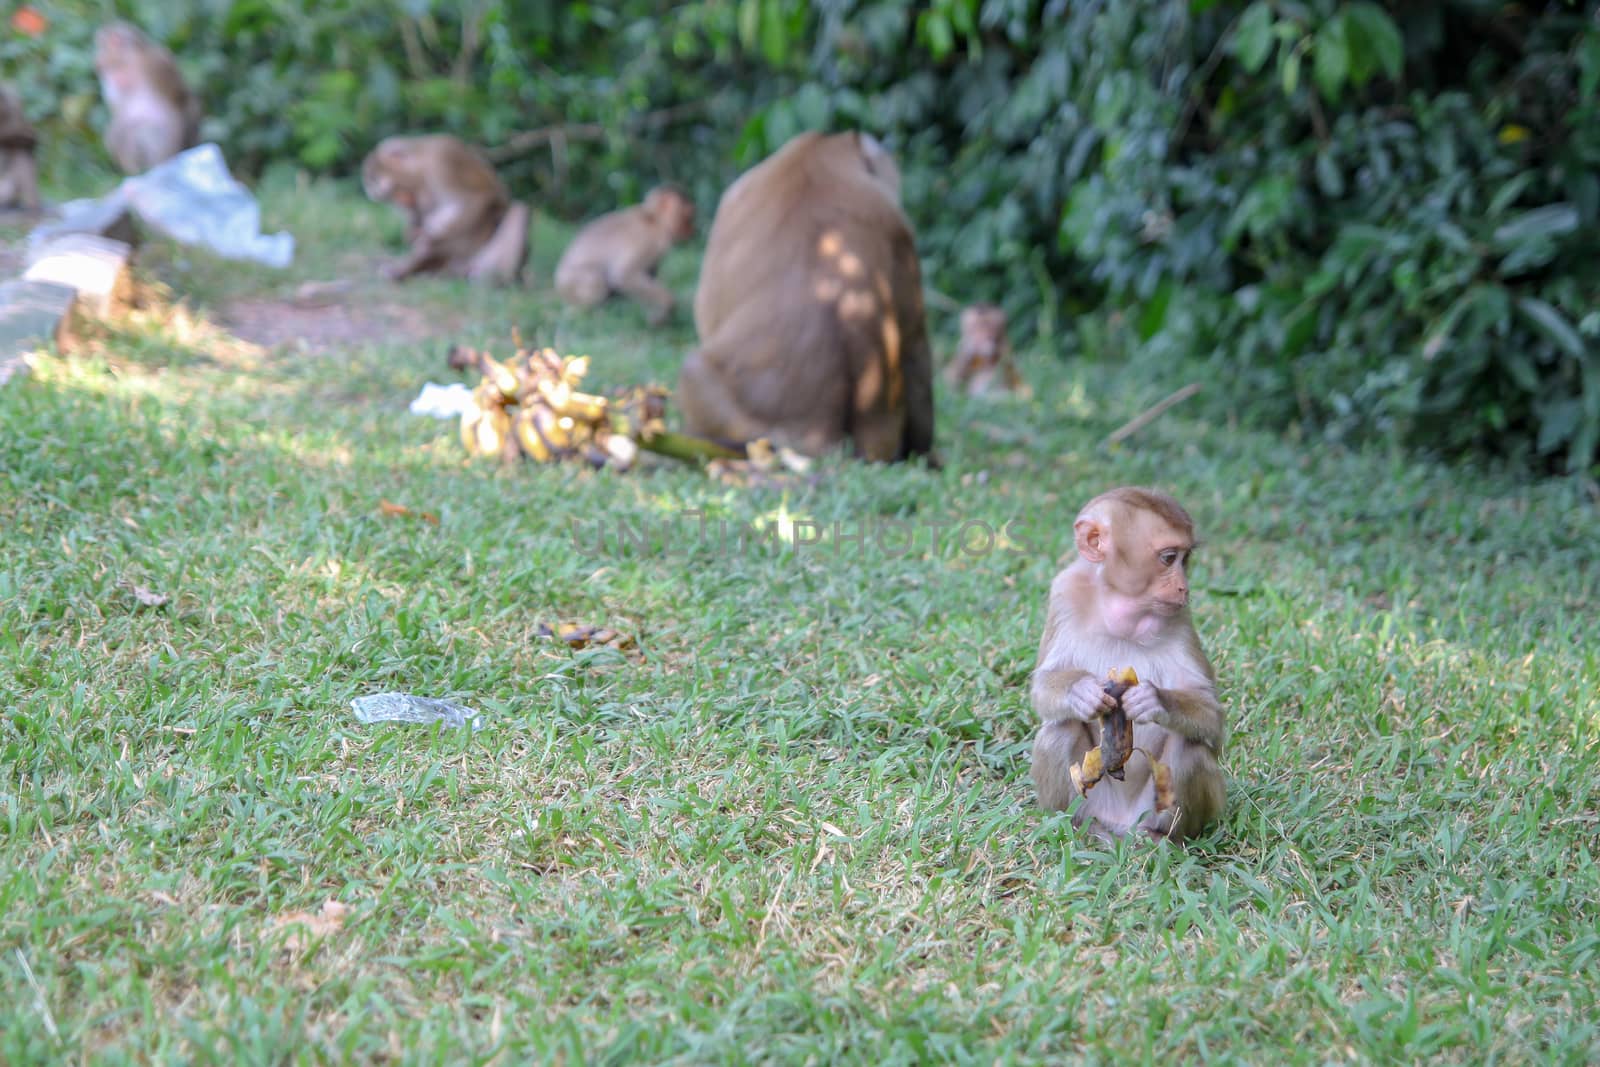 baby monkey eat banana near group.